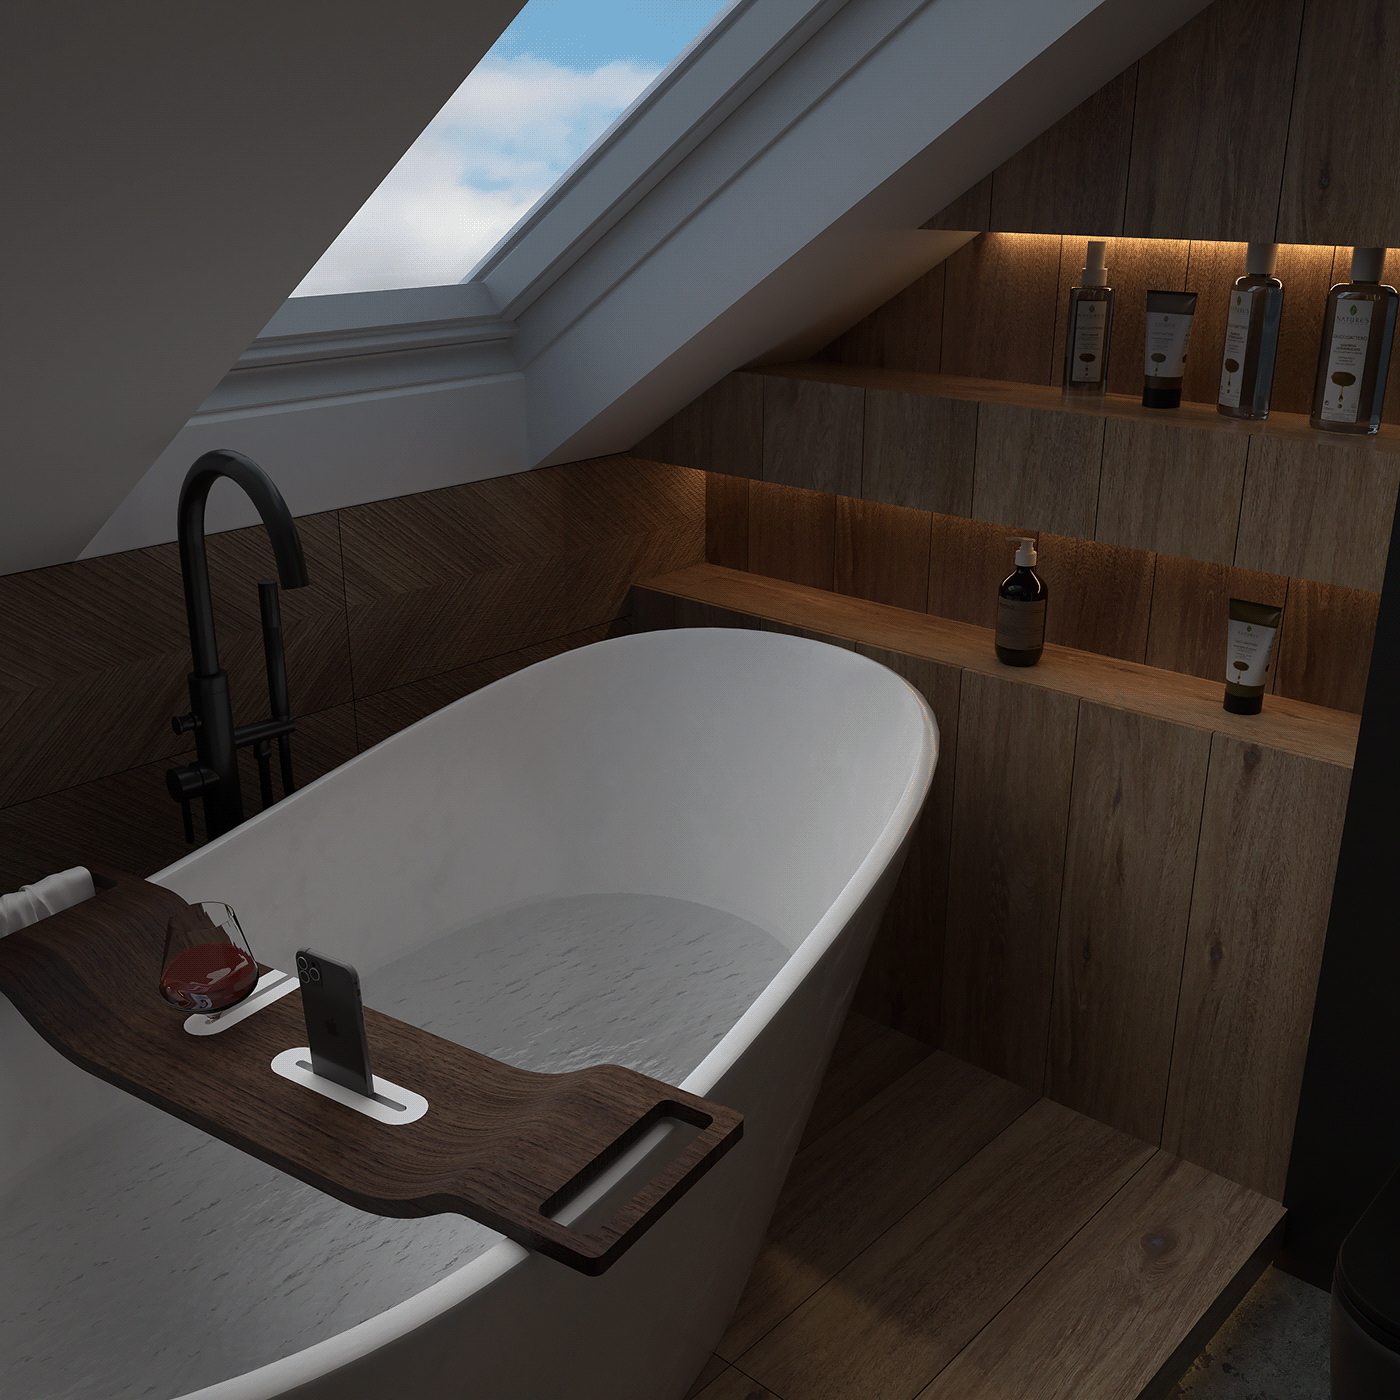 architecture bathroom blackbathroom homedesign Interior interiordesign